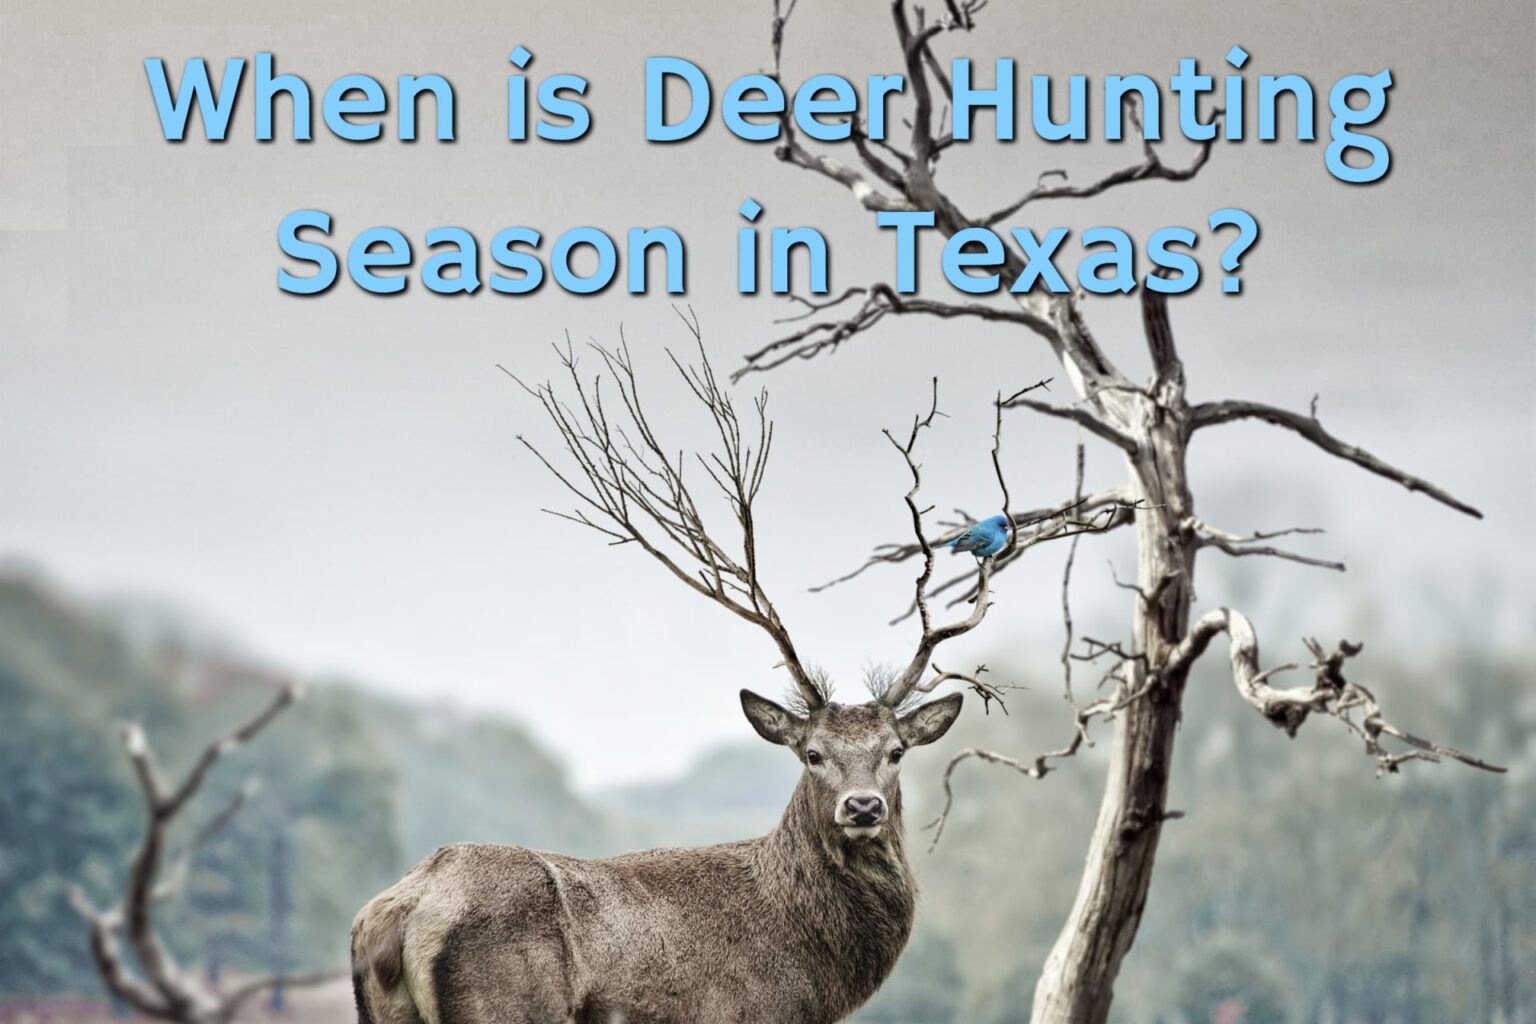 When is Deer Hunting Season in Texas? Texas Deer Hunting Season